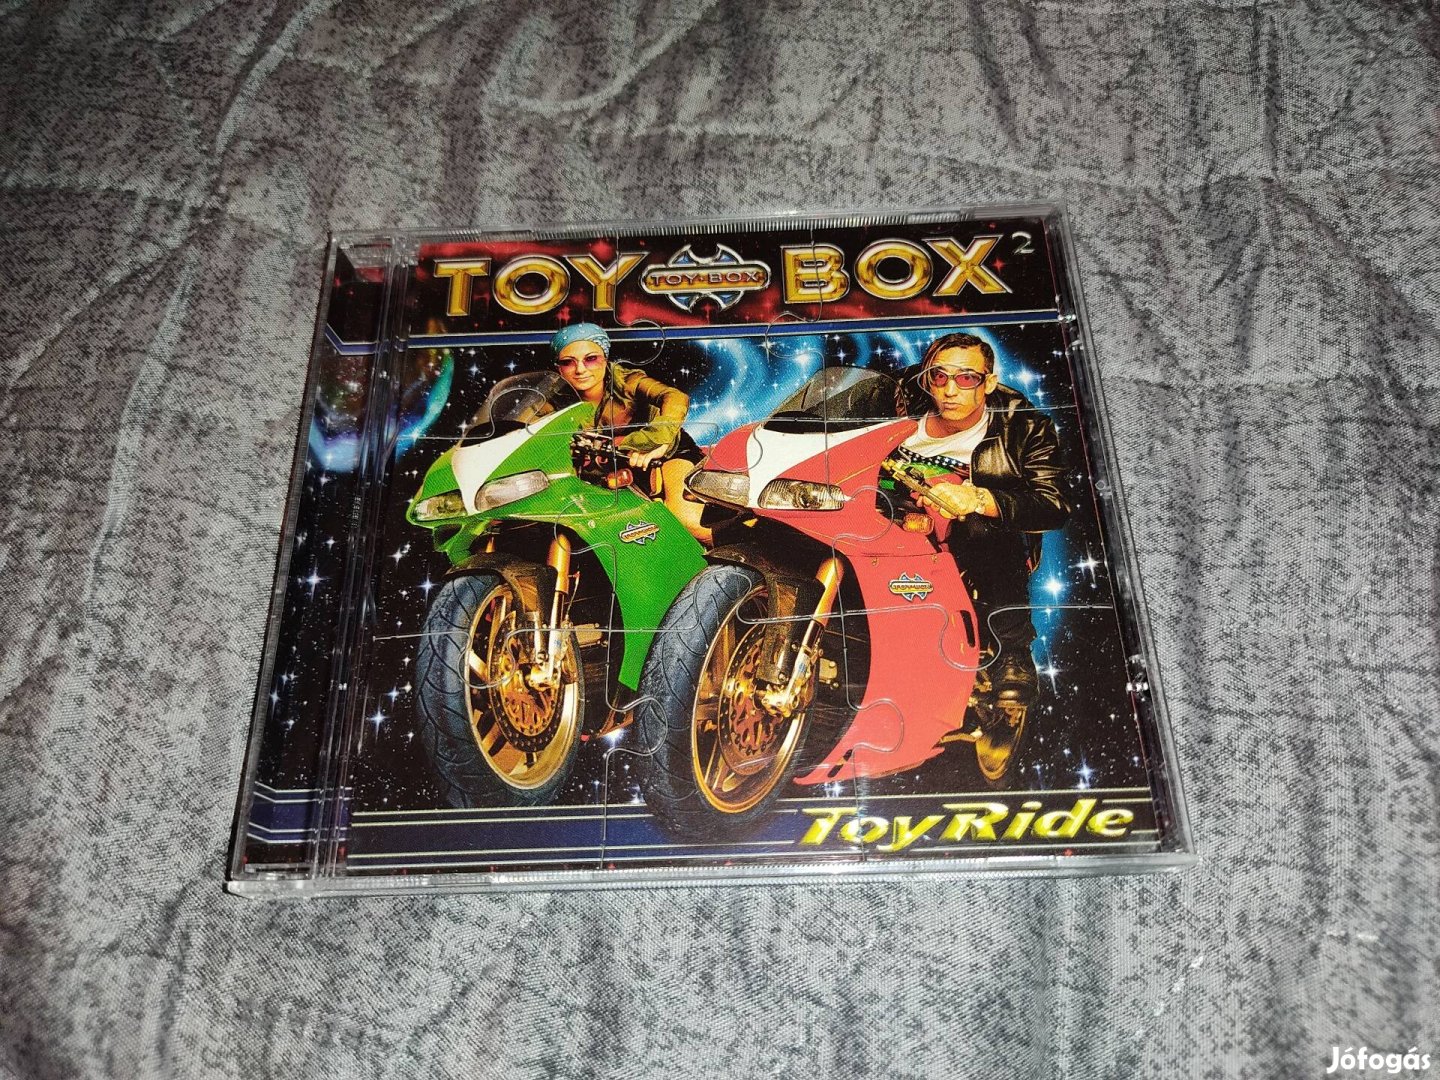 Újszerű Toy Box - Toyride CD (kirakos borítóval)(2001)